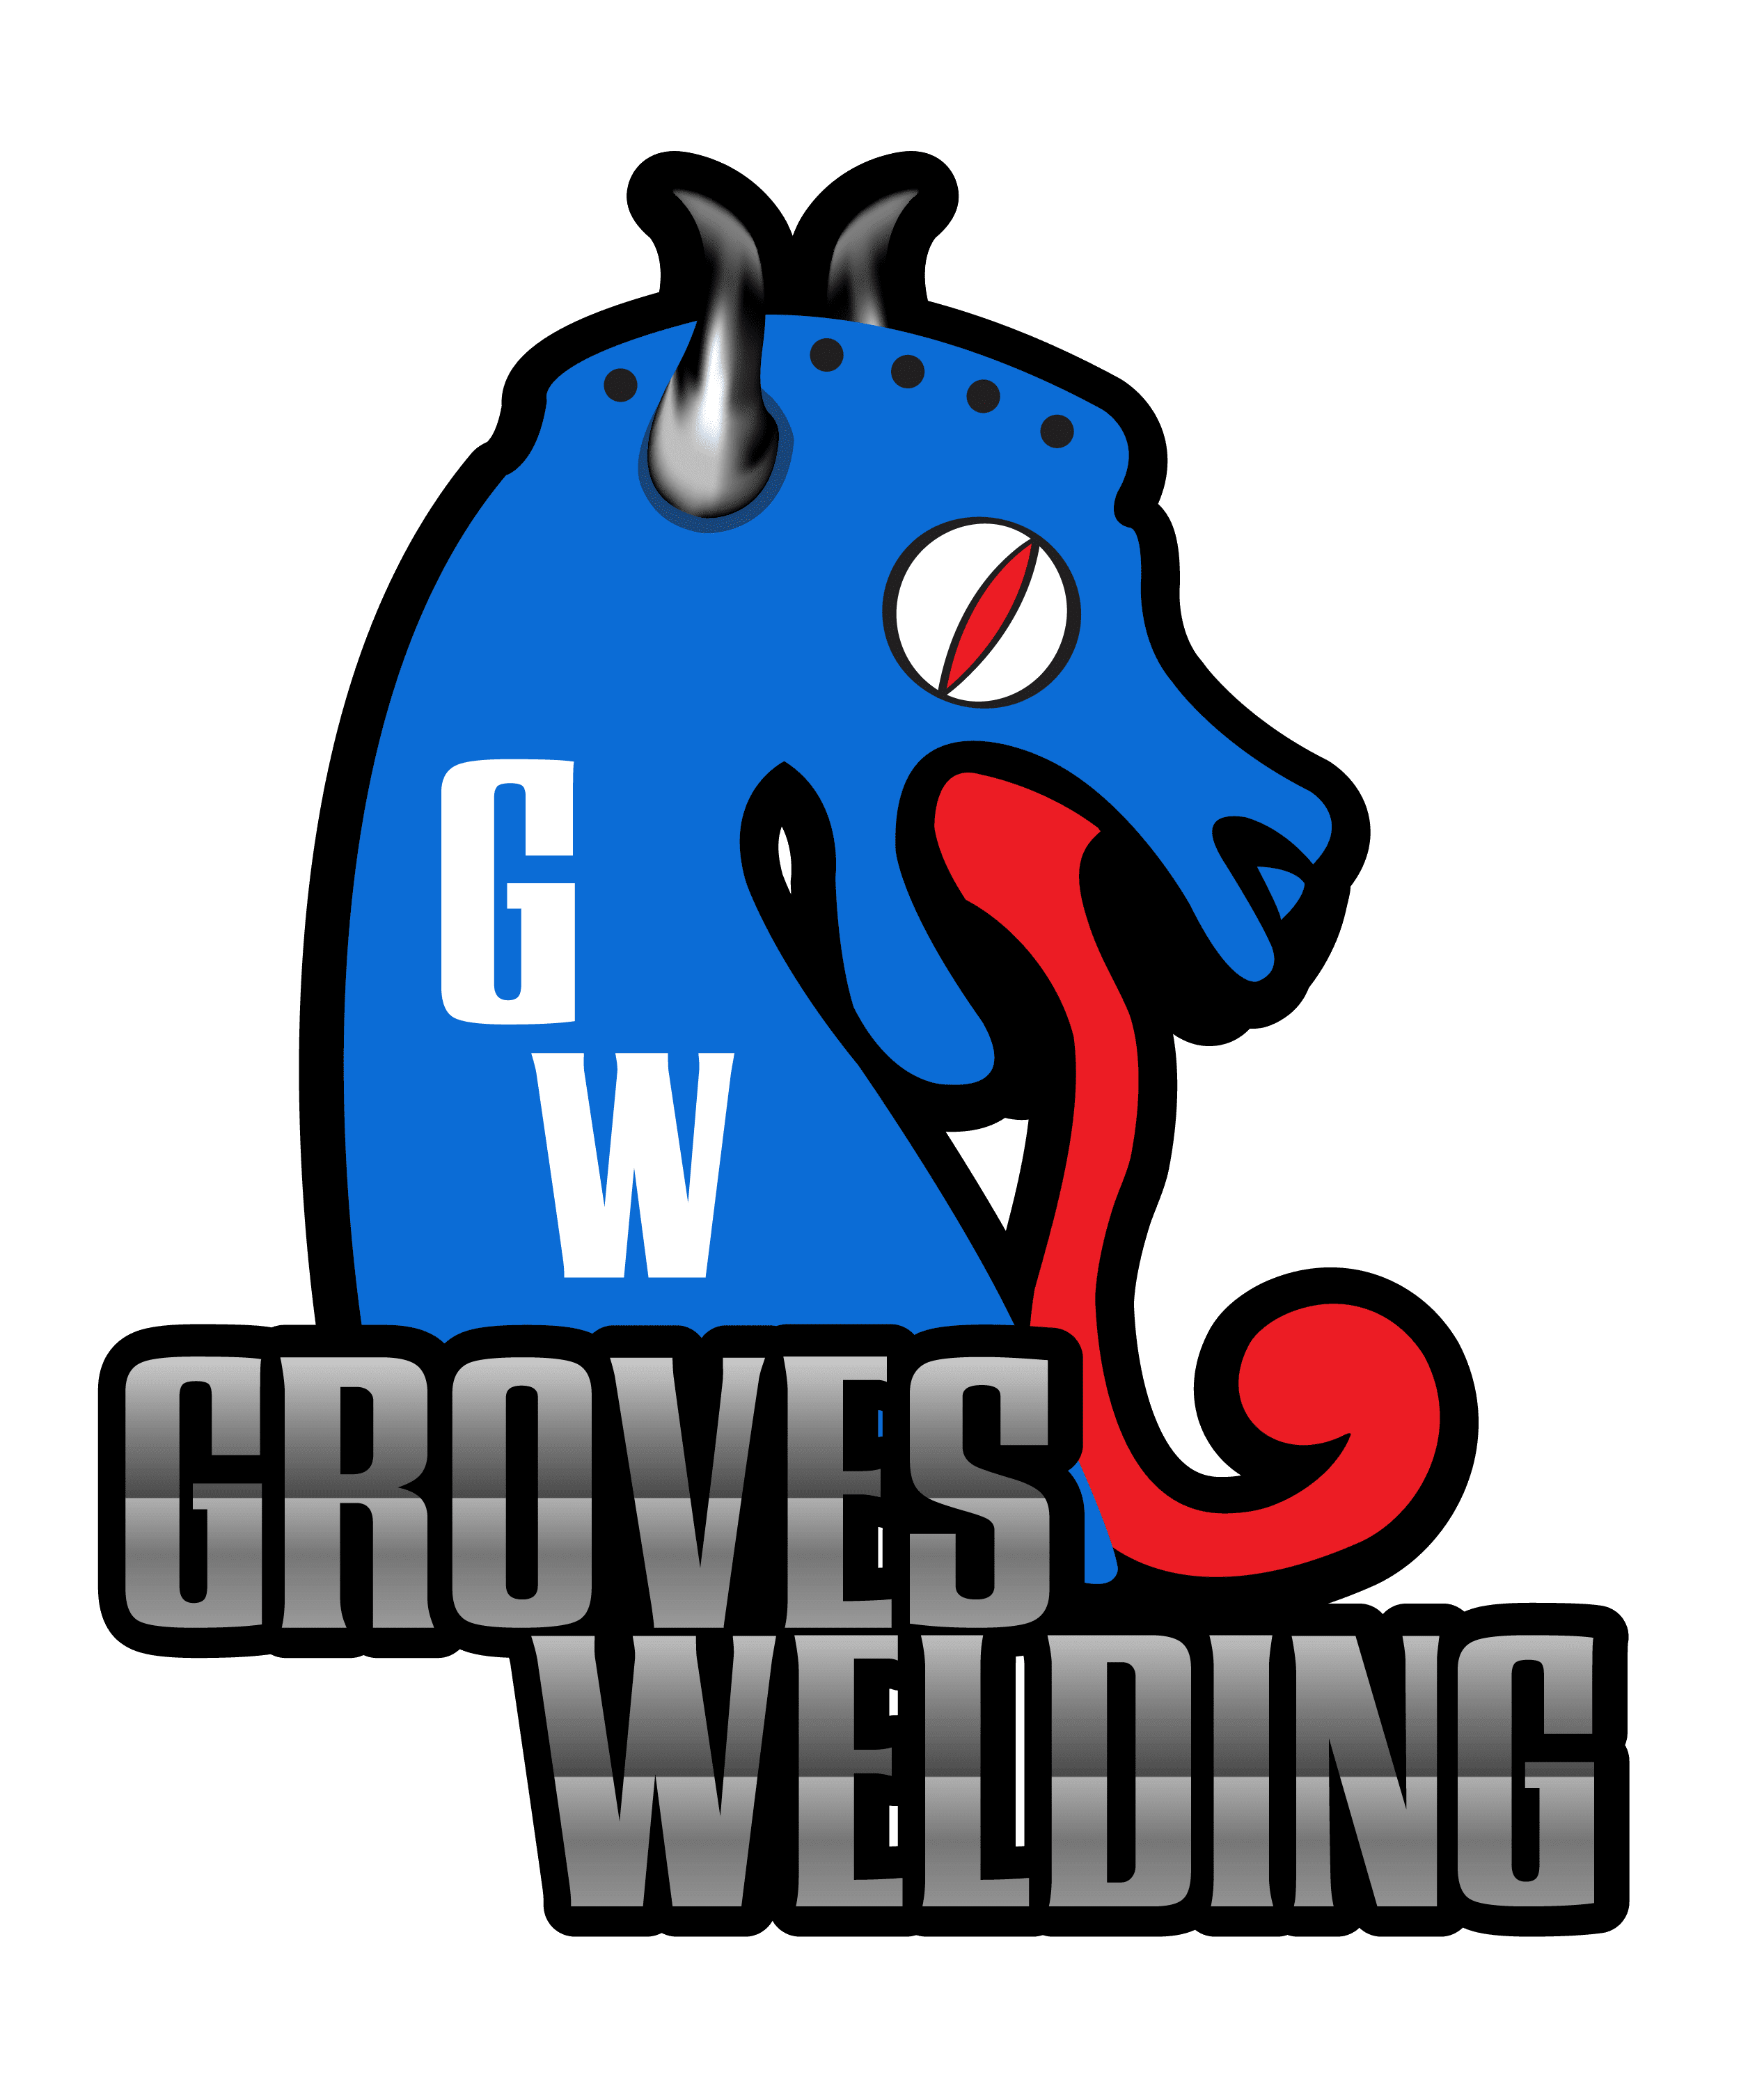 Groves Welding